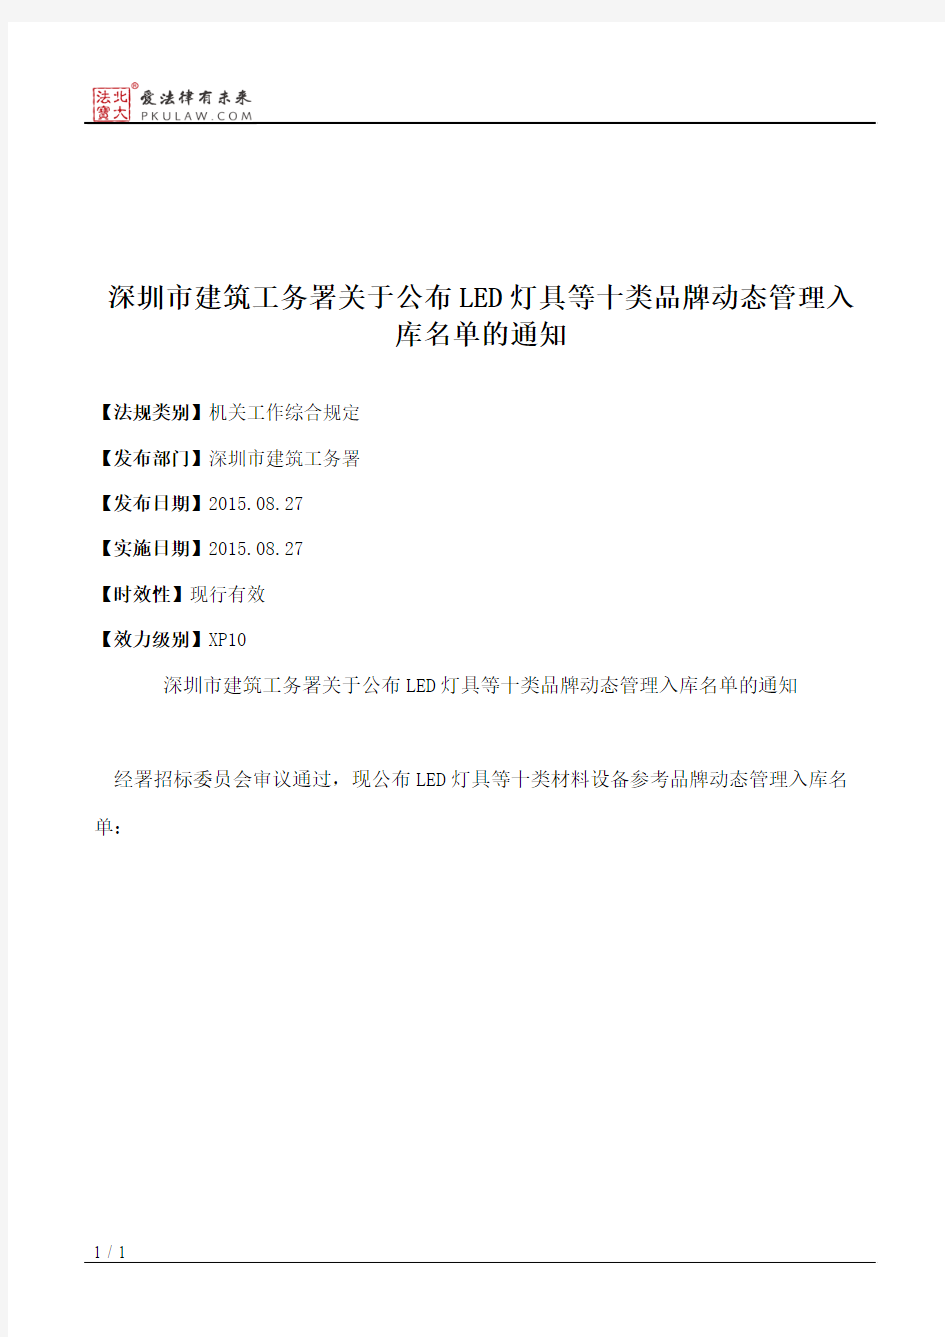 深圳市建筑工务署关于公布LED灯具等十类品牌动态管理入库名单的通知